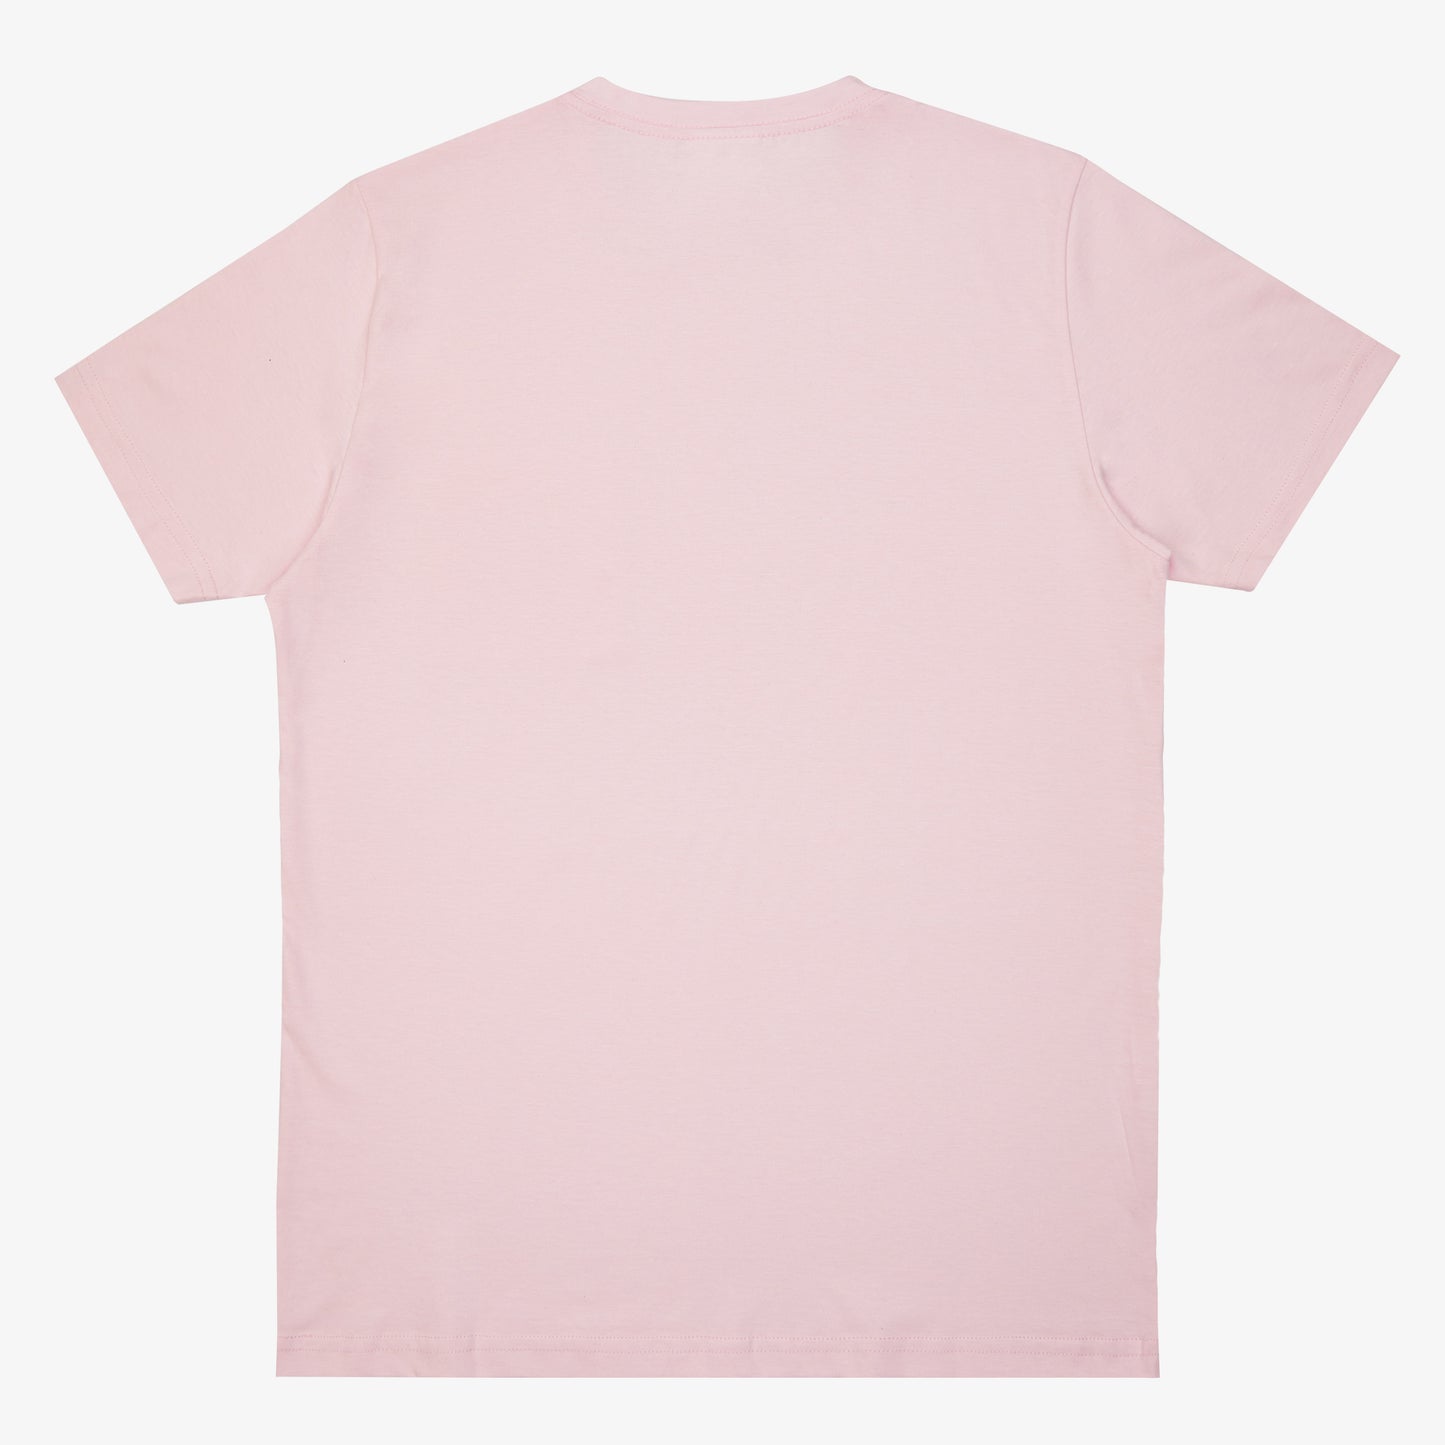 Latin Lover Basic Baby Pink Pocket T-shirt